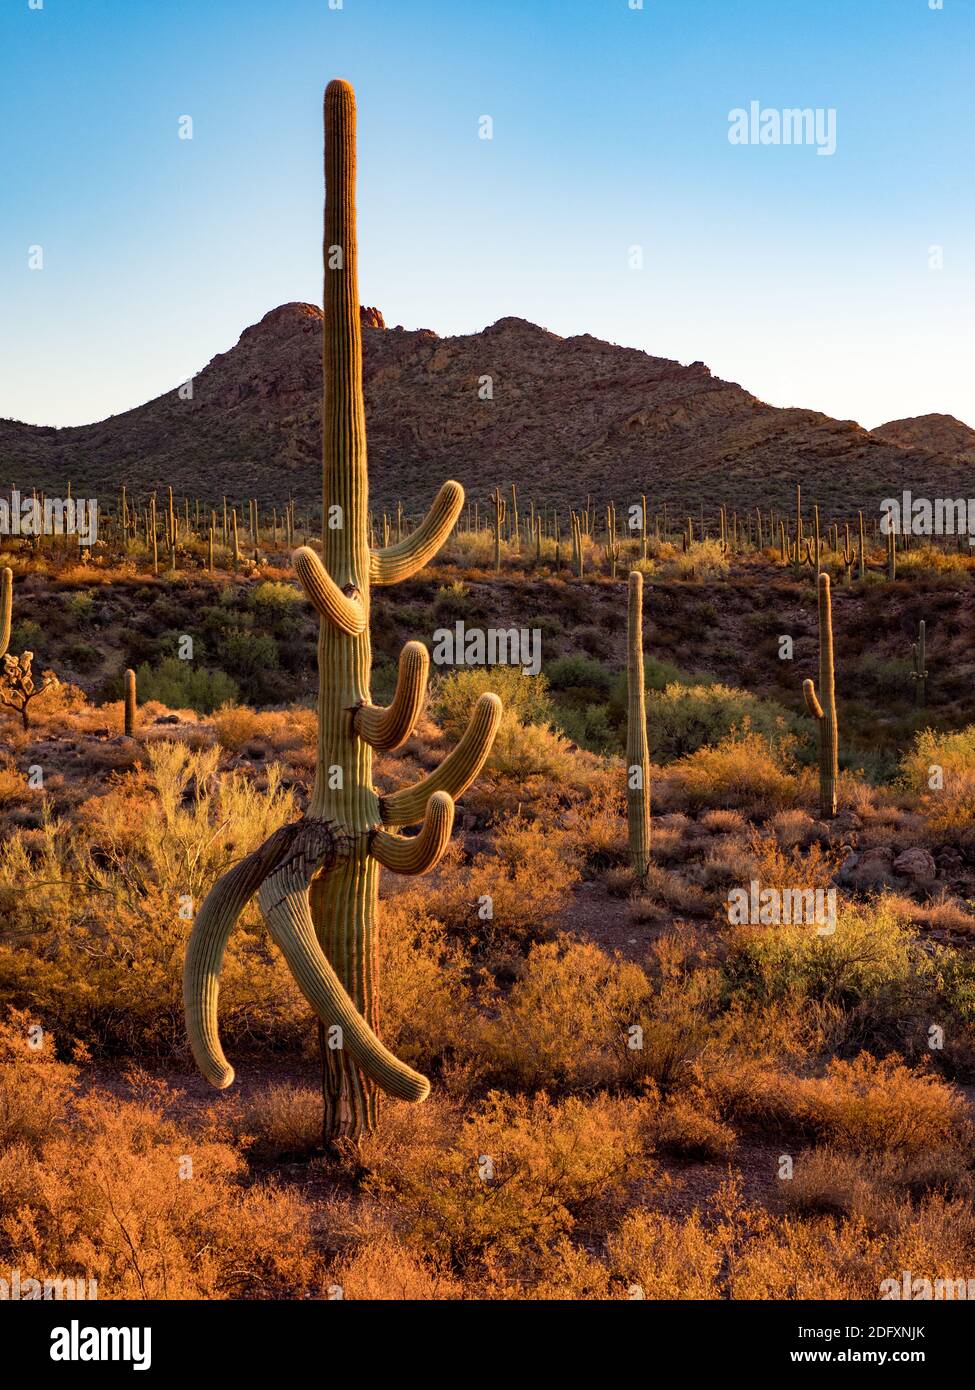 Le magnifique désert du terrain de camping Alamo Canyon dans le monument national Organ Pipe Cactus, Arizona, États-Unis Banque D'Images